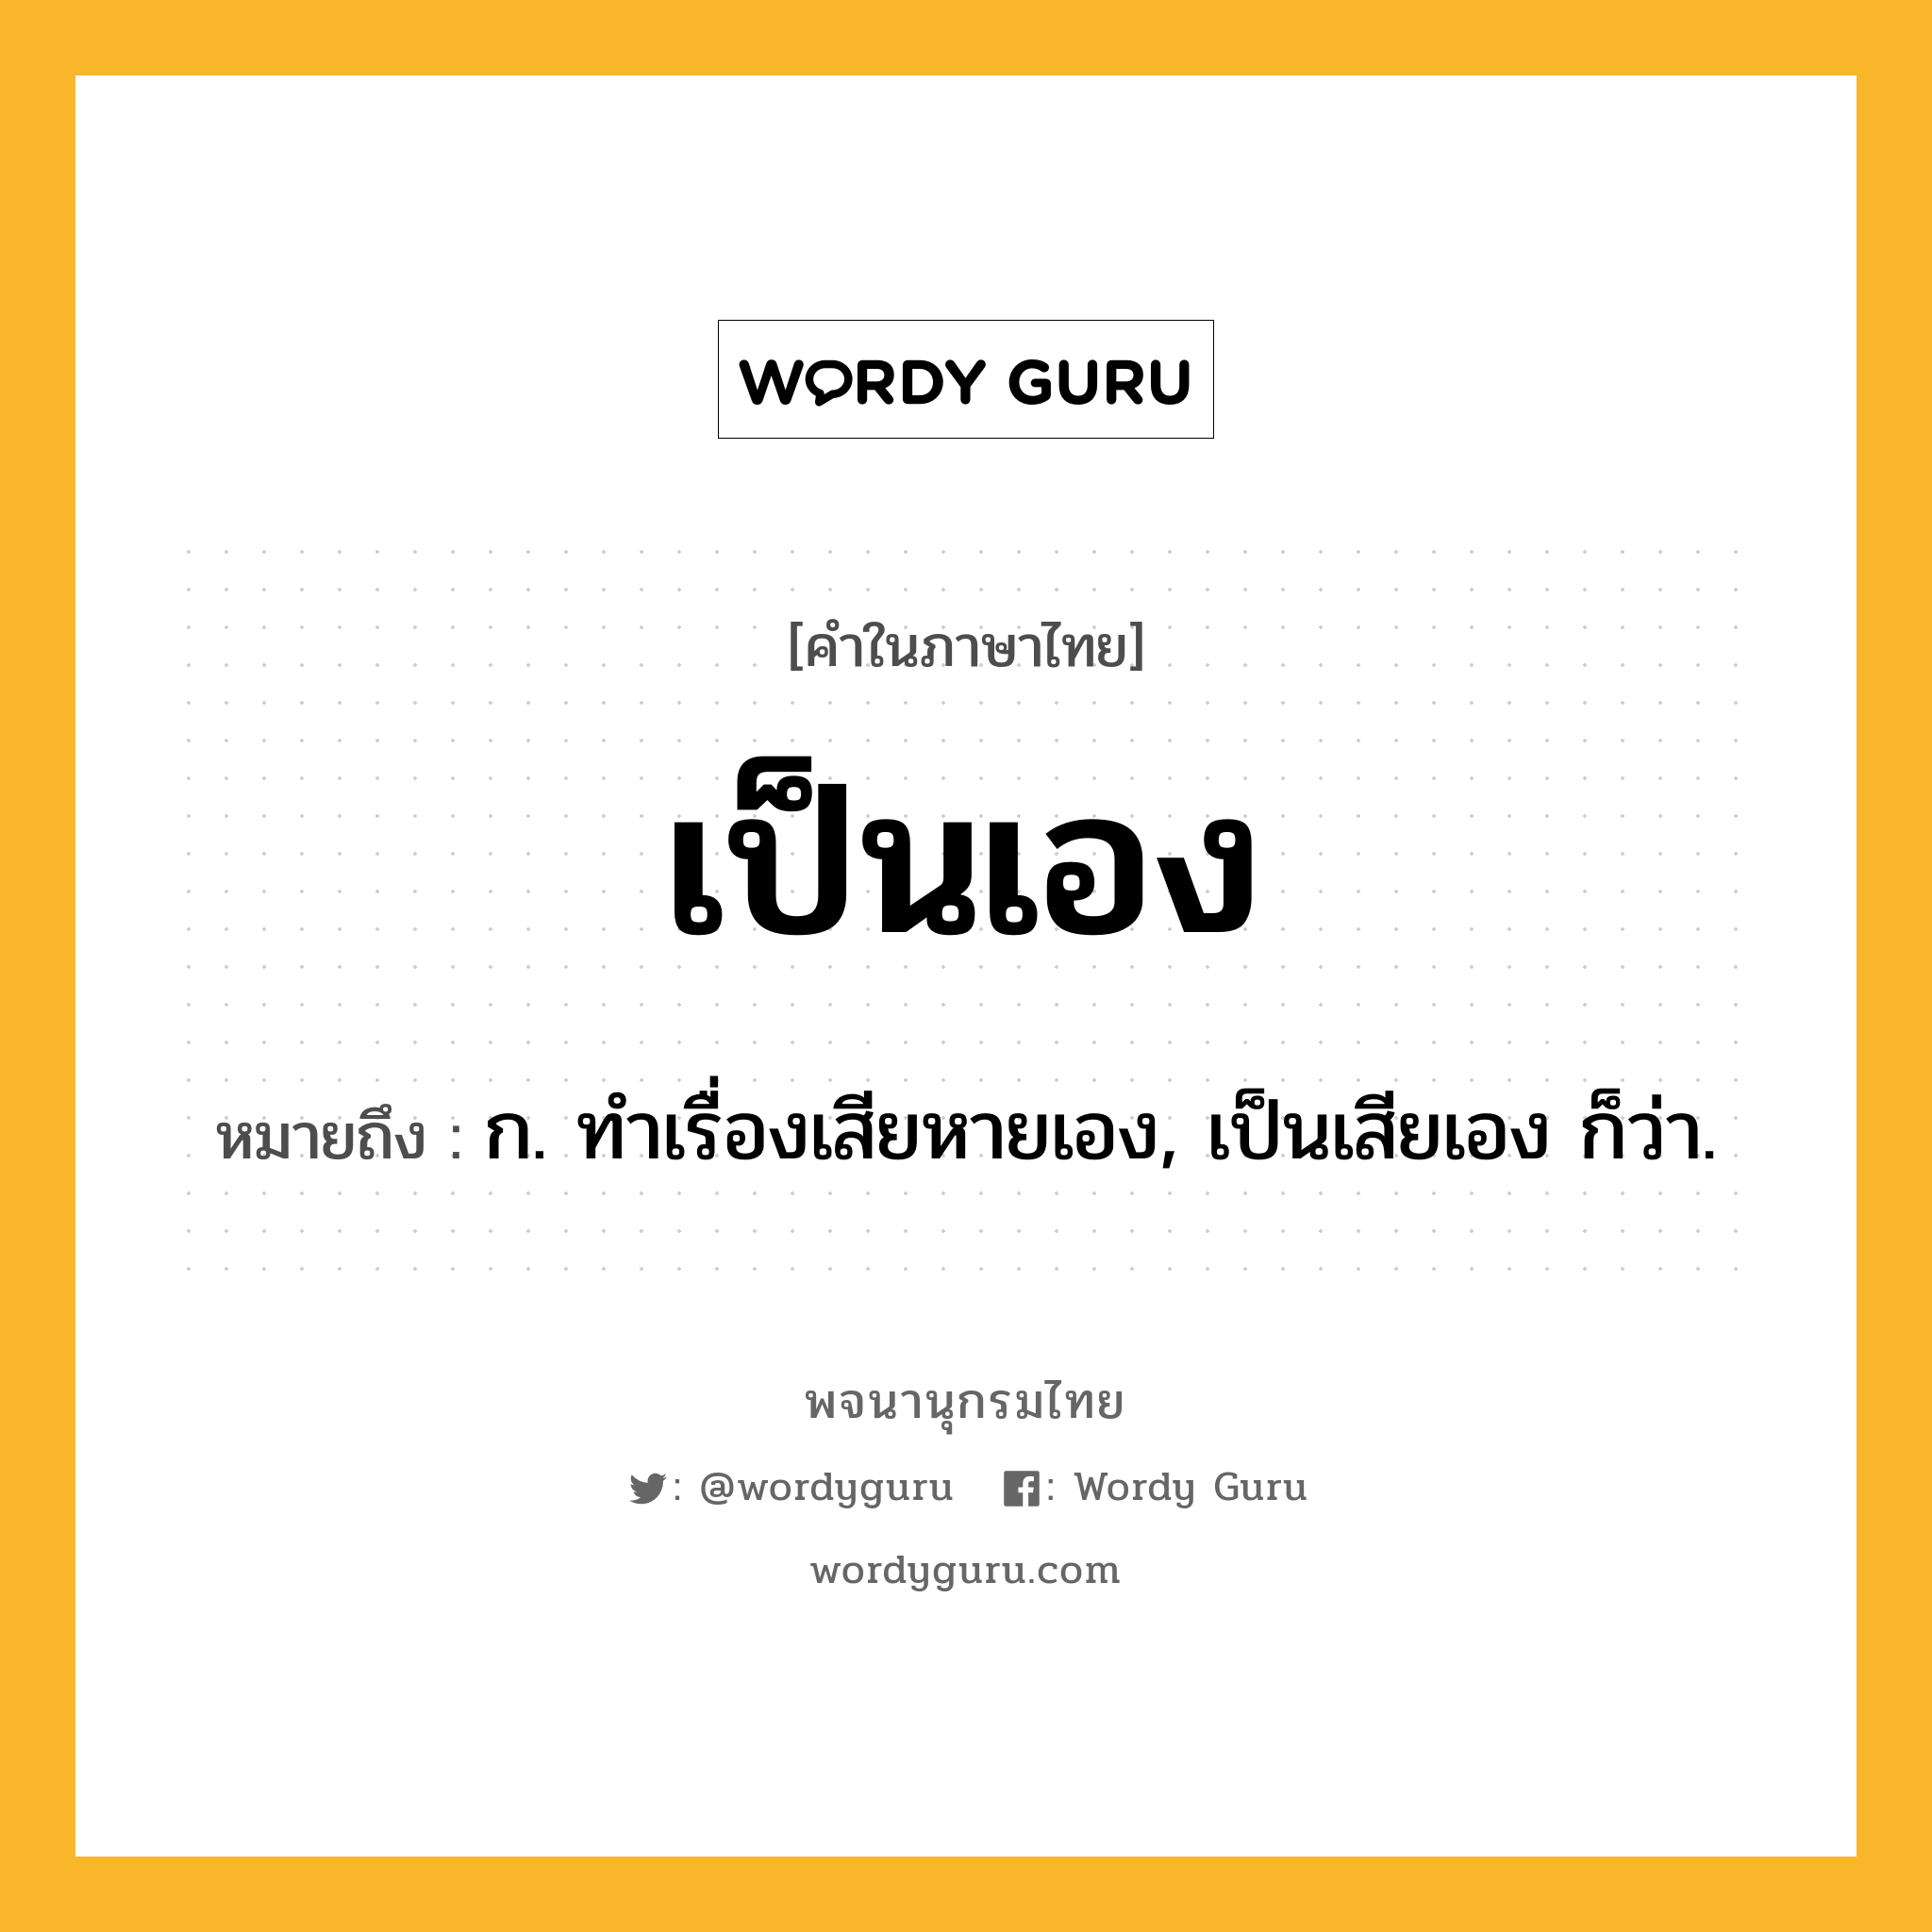 เป็นเอง หมายถึงอะไร?, คำในภาษาไทย เป็นเอง หมายถึง ก. ทําเรื่องเสียหายเอง, เป็นเสียเอง ก็ว่า.